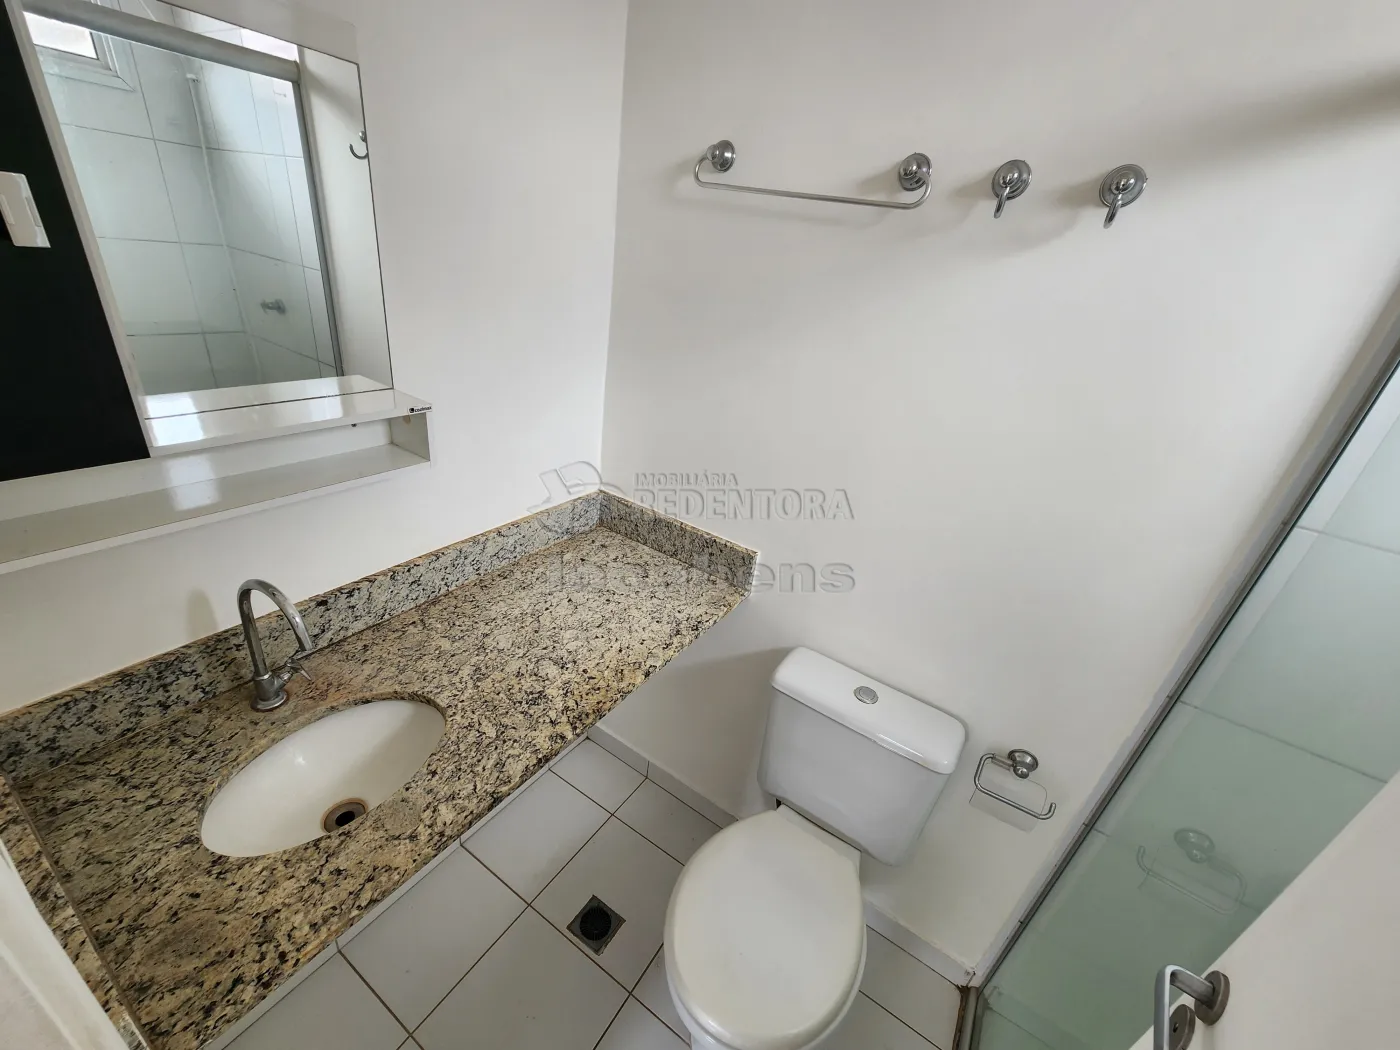 Alugar Casa / Condomínio em São José do Rio Preto apenas R$ 2.000,00 - Foto 16